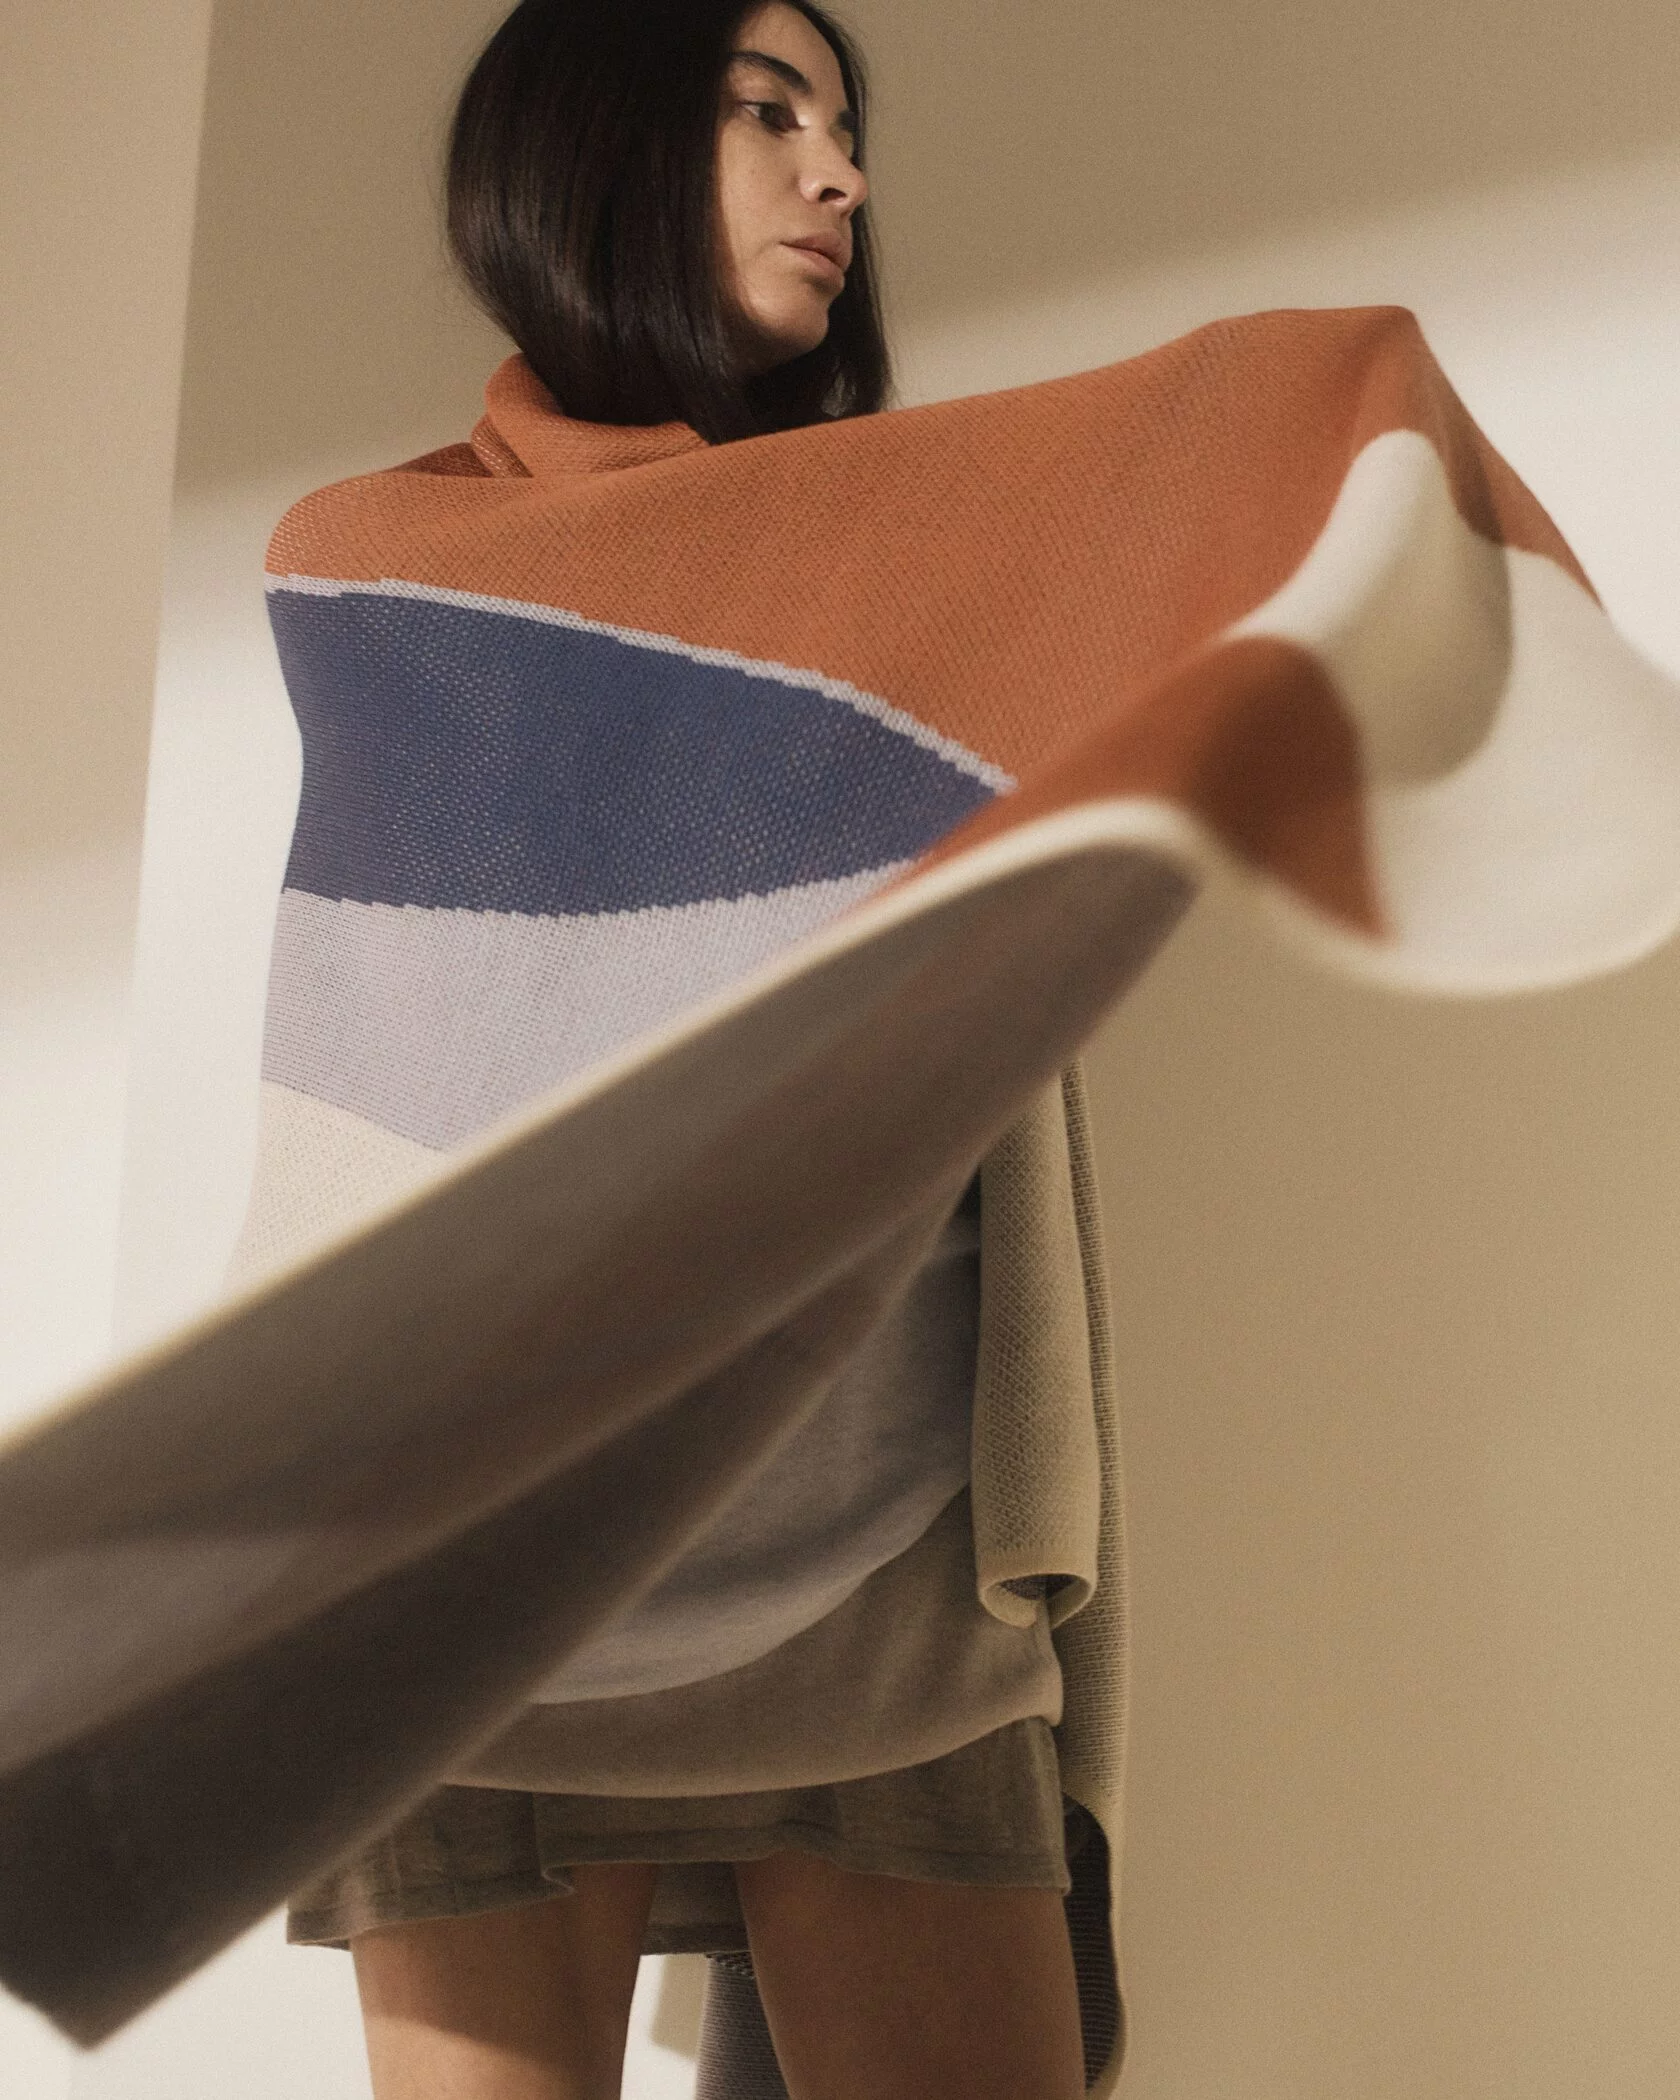 Бренд премиального трикотажа Lyna+ выпустил коллекцию домашнего текстиля (фото 12)